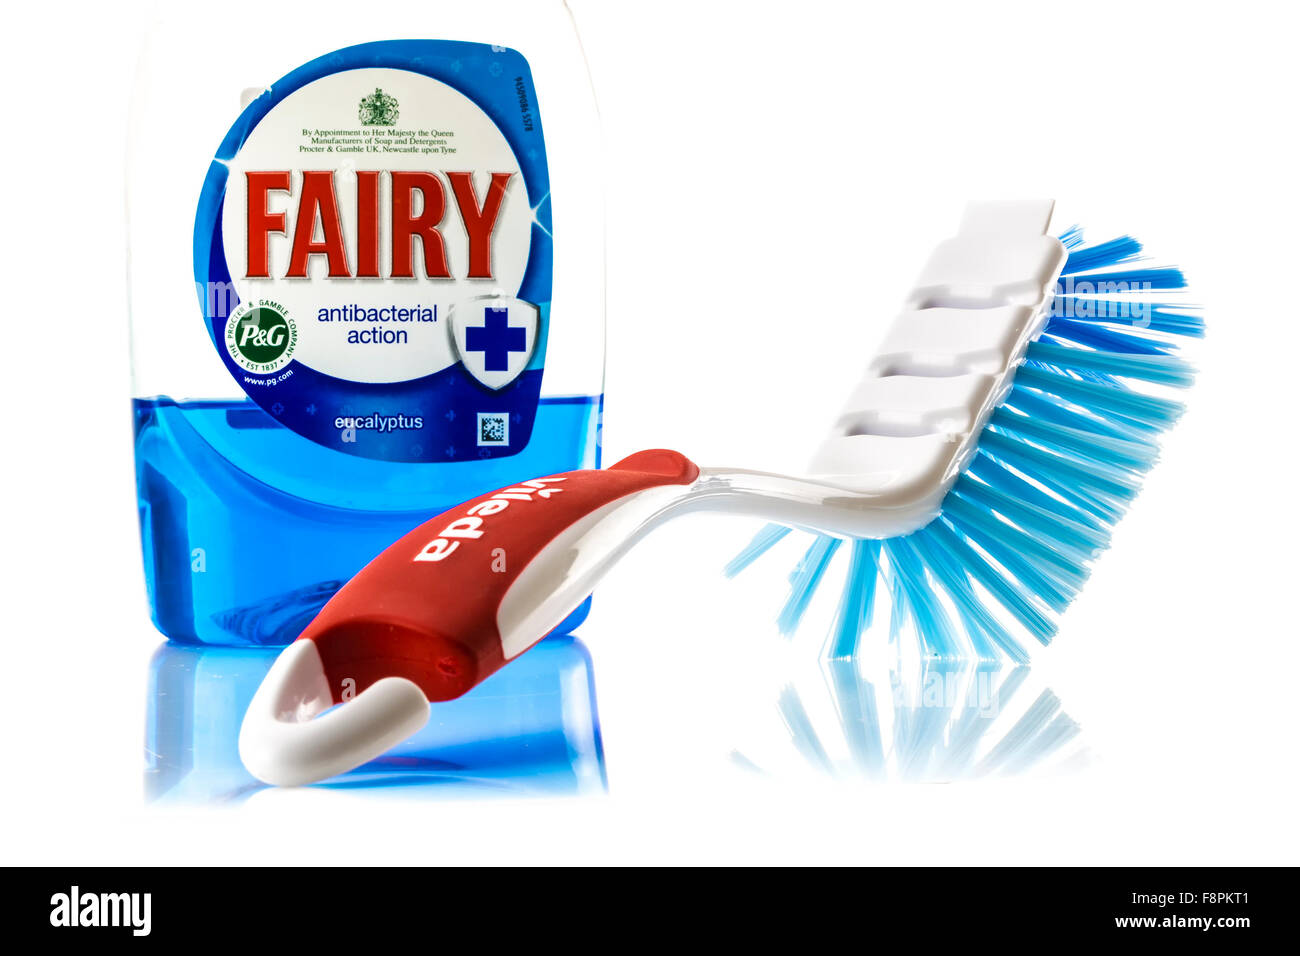 Fee flüssige Antibacteterial Action und Vileda Abwasch Pinsel auf einem weißen Hintergrund. Stockfoto